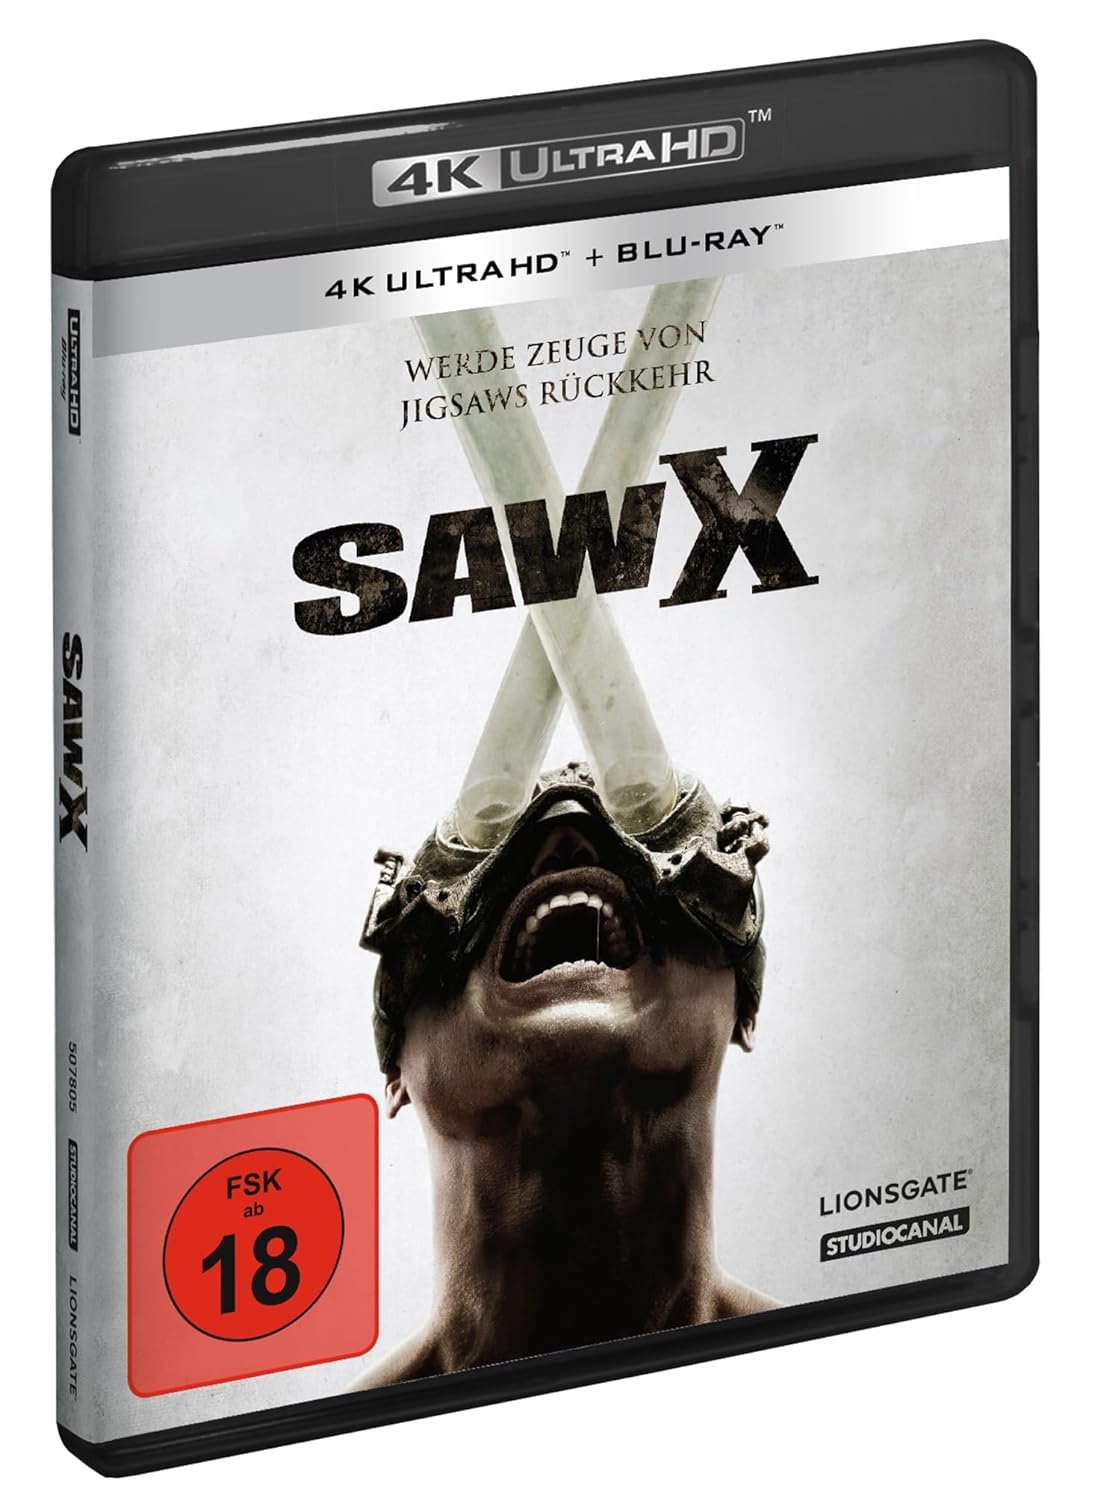 Ultra HD Blu-ray 💿 on X: 'Saw X' 4K Ultra HD Blu-ray, German 🇩🇪  release:  #SawX  / X